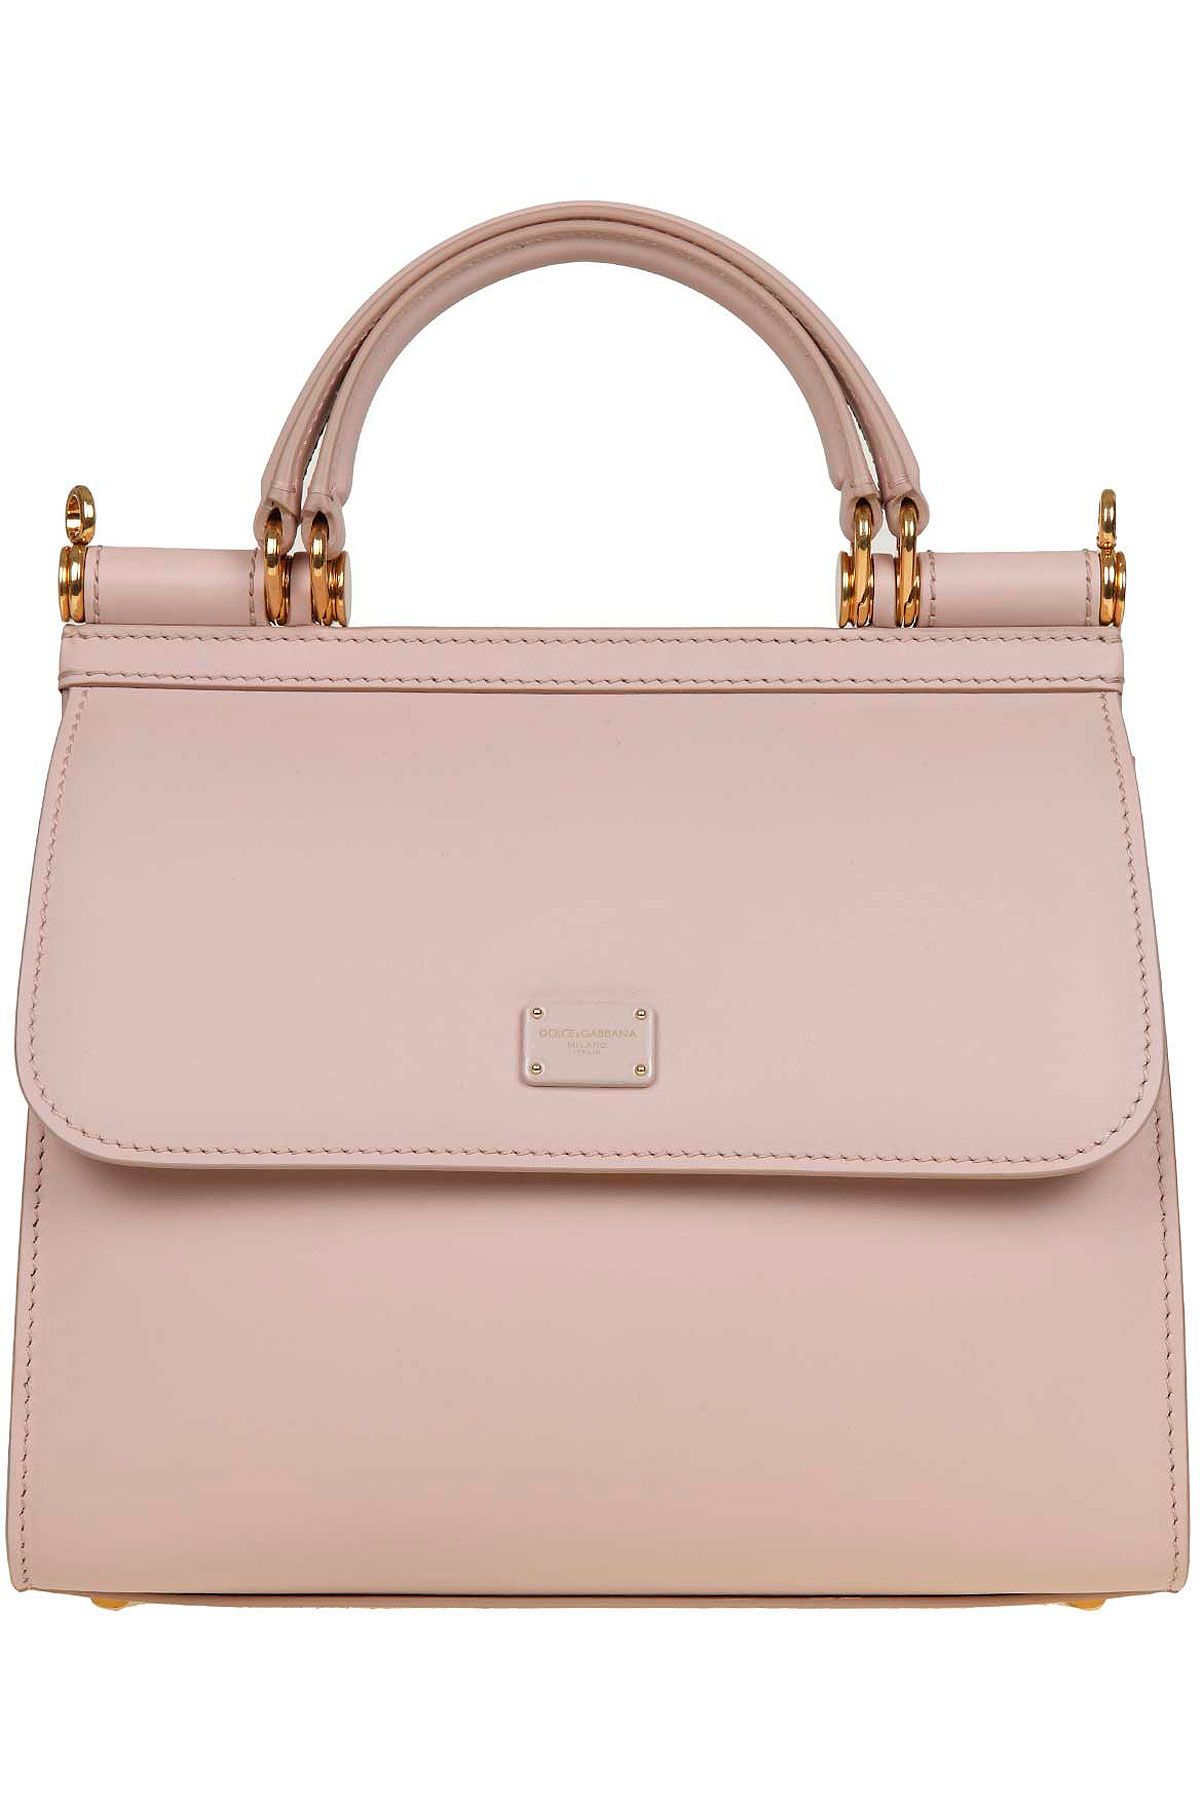 Handbags Dolce & Gabbana, Style code: bb6622-av385-80412